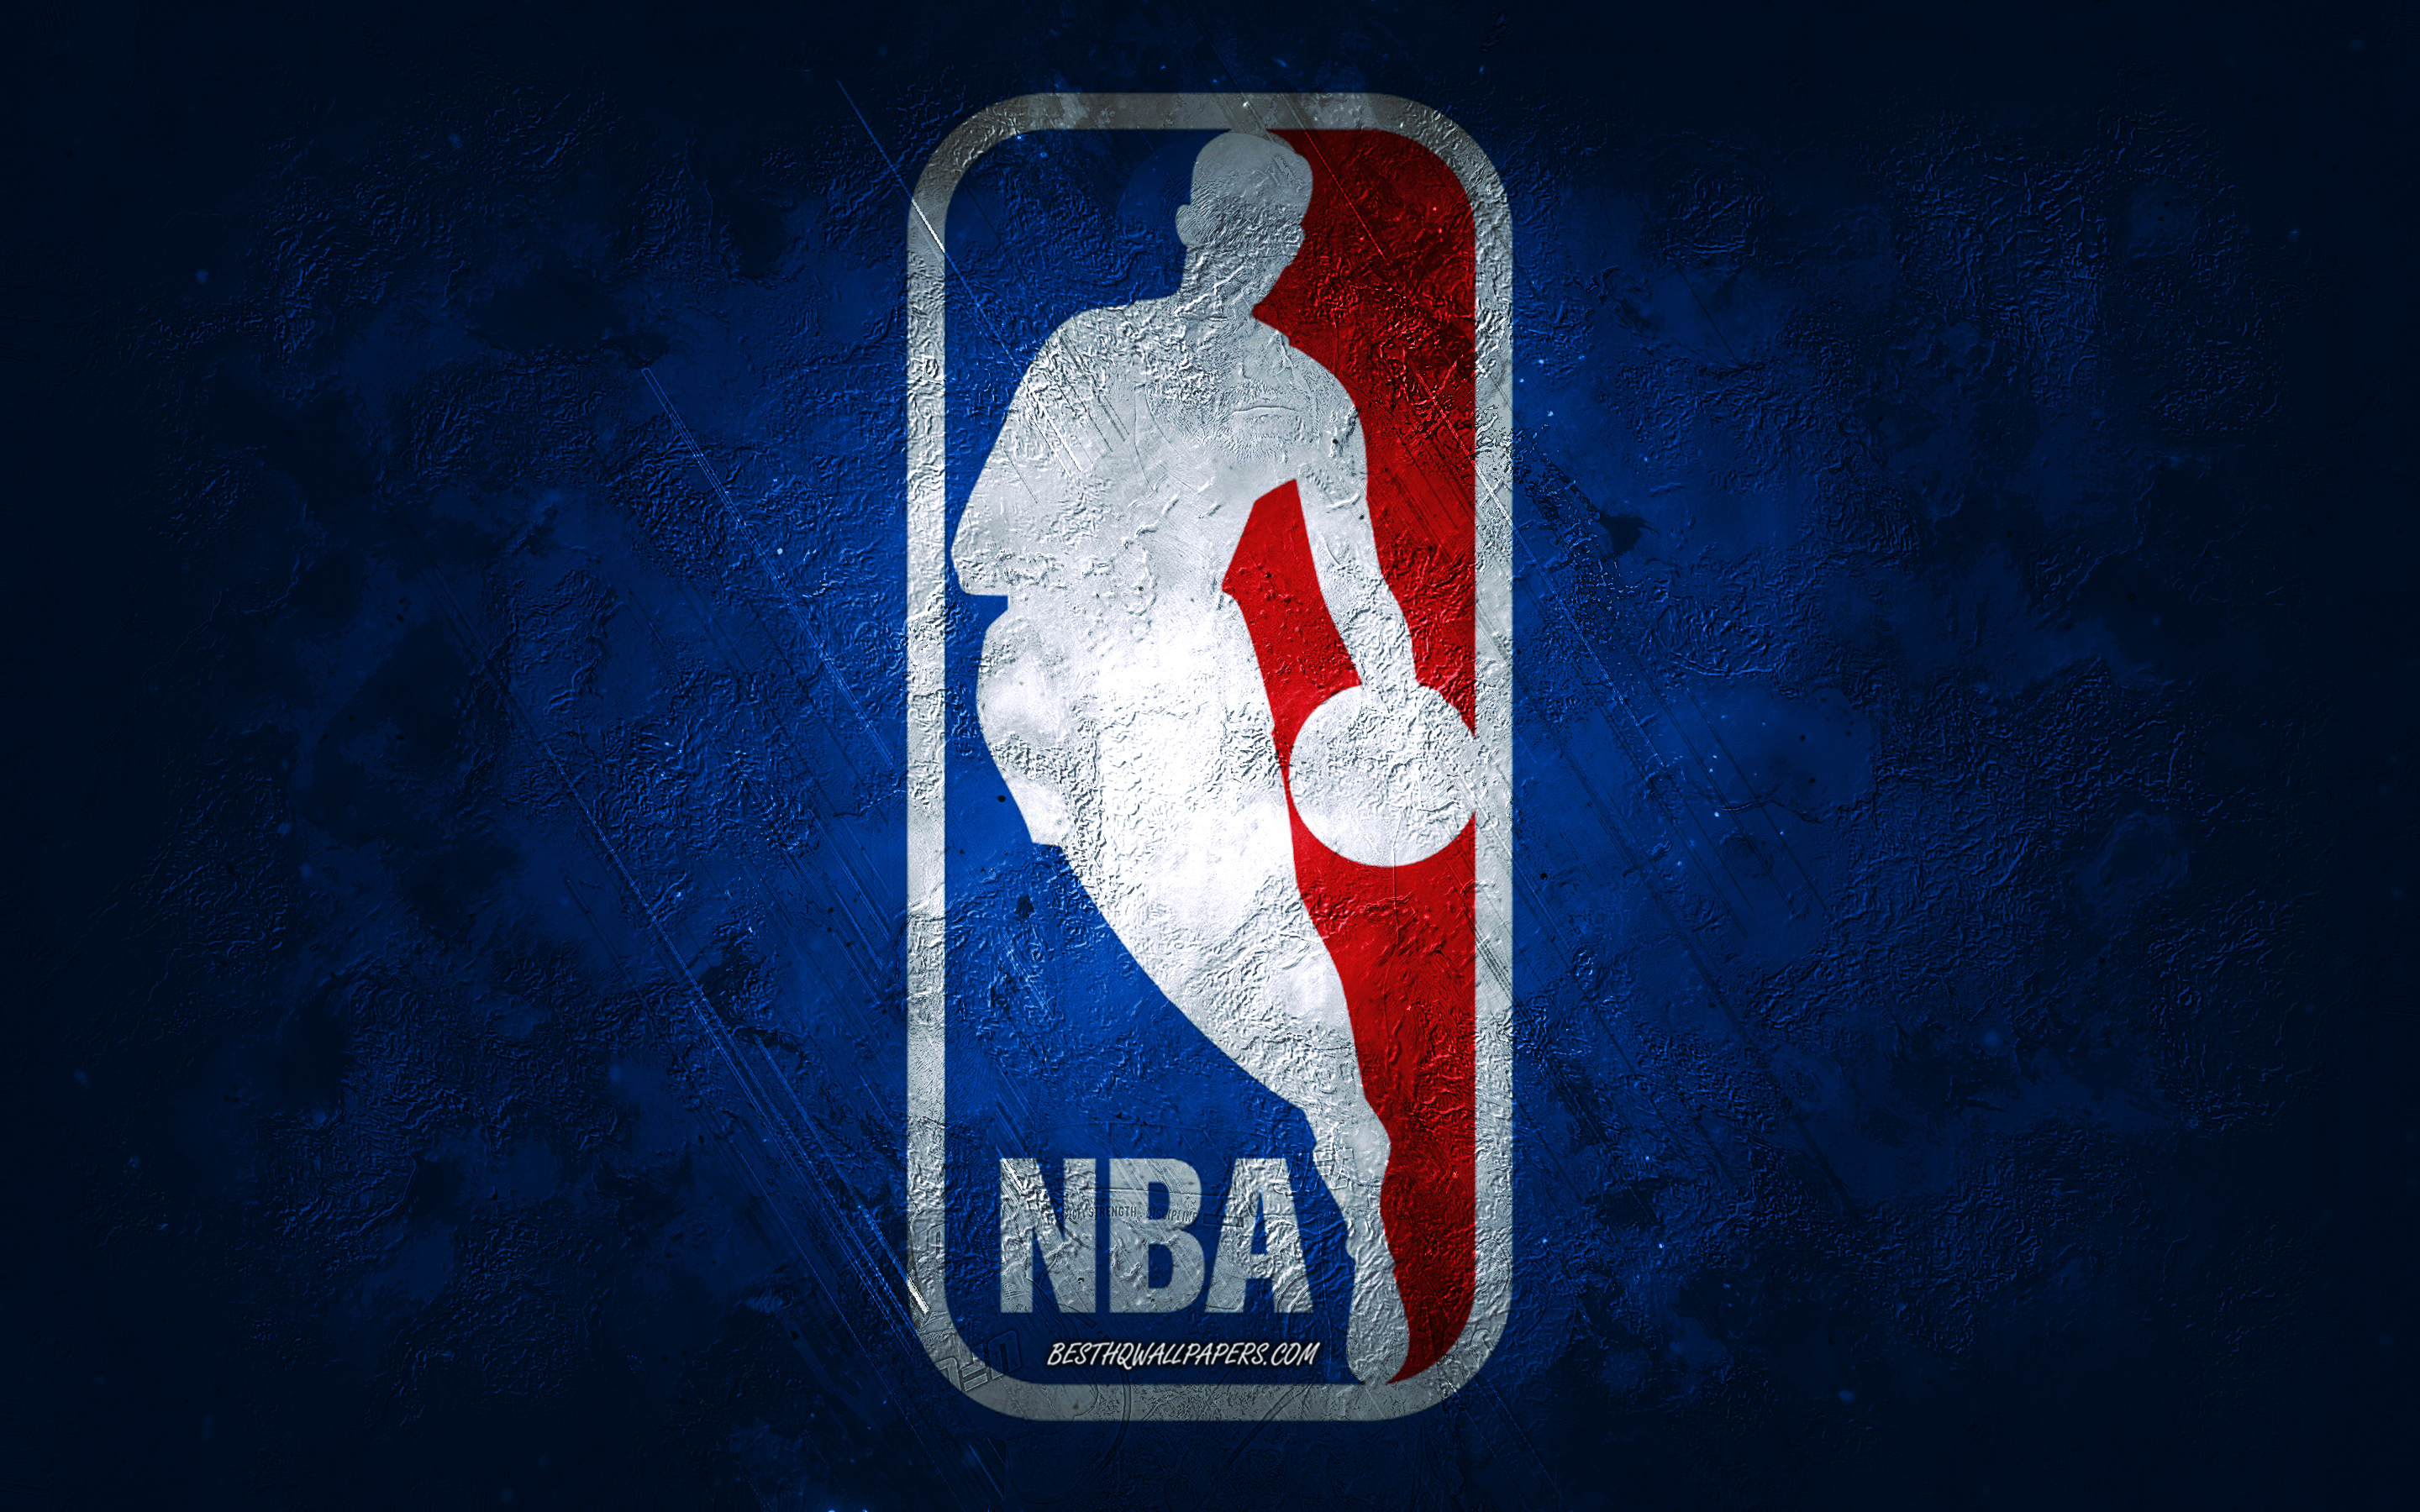 Hình nền độc đáo với logo NBA đá xanh, hiệu ứng grunge trên nền đen sẽ khiến bạn cảm thấy bất ngờ về sự phối hợp hài hòa giữa nét cổ điển và hiện đại. Hãy xem ngay hình nền này để tìm hiểu thêm.